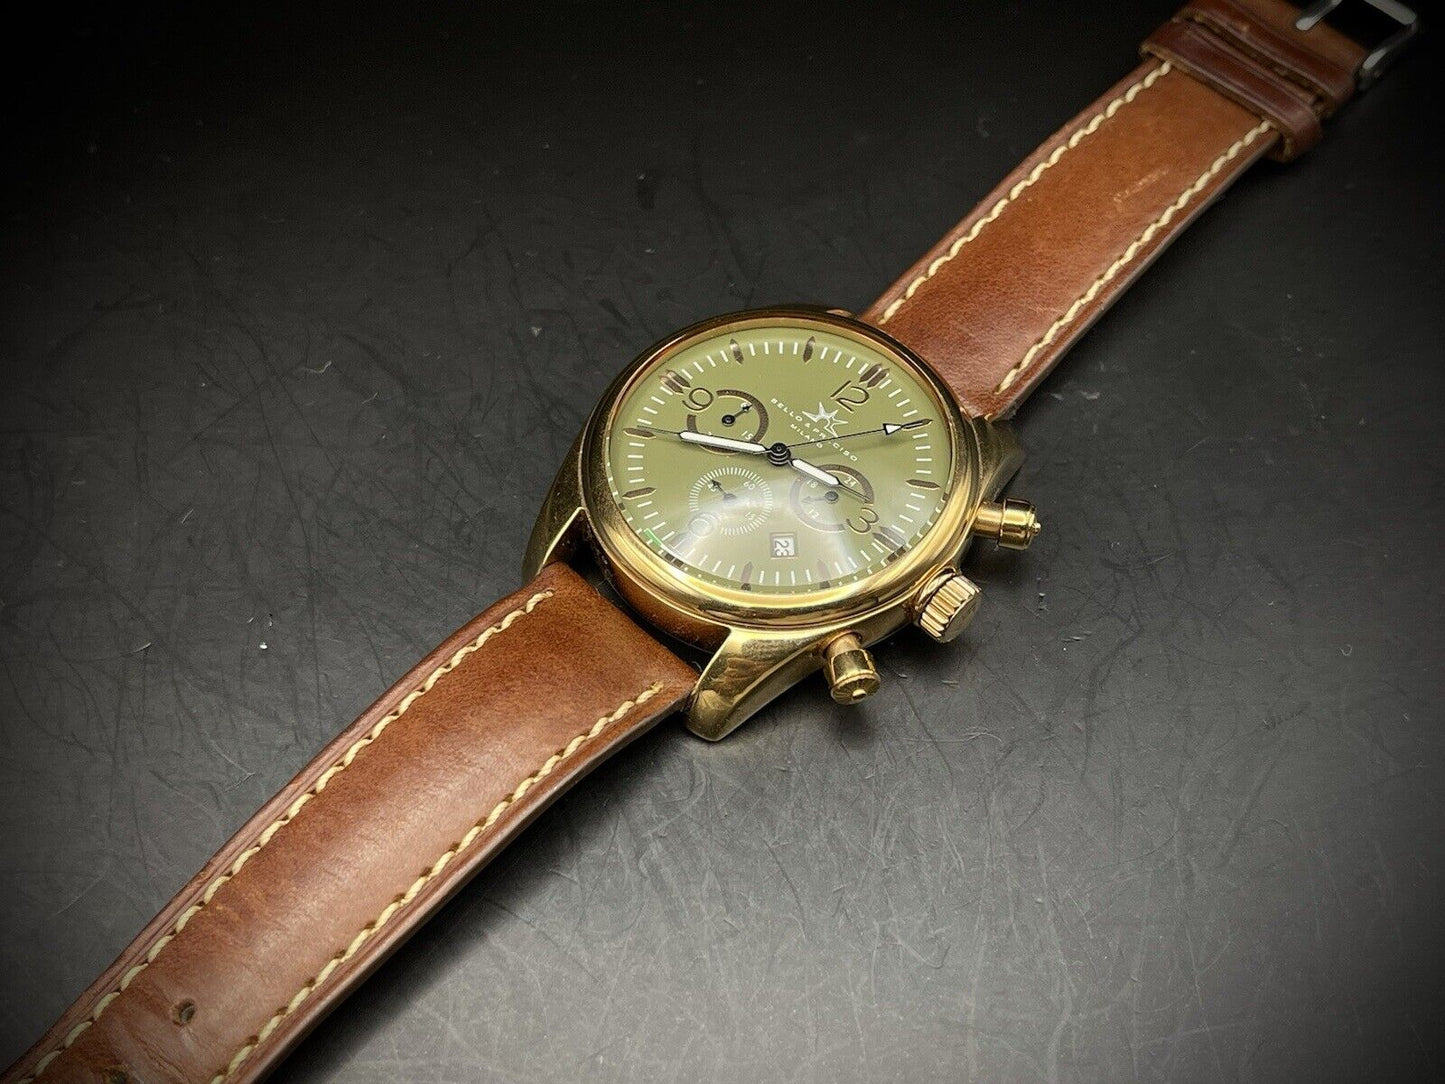 Bello & Preciso Milano Italain Mens Watch Chronograph Green NOS Quartz 40mm - Grab A Watch Co